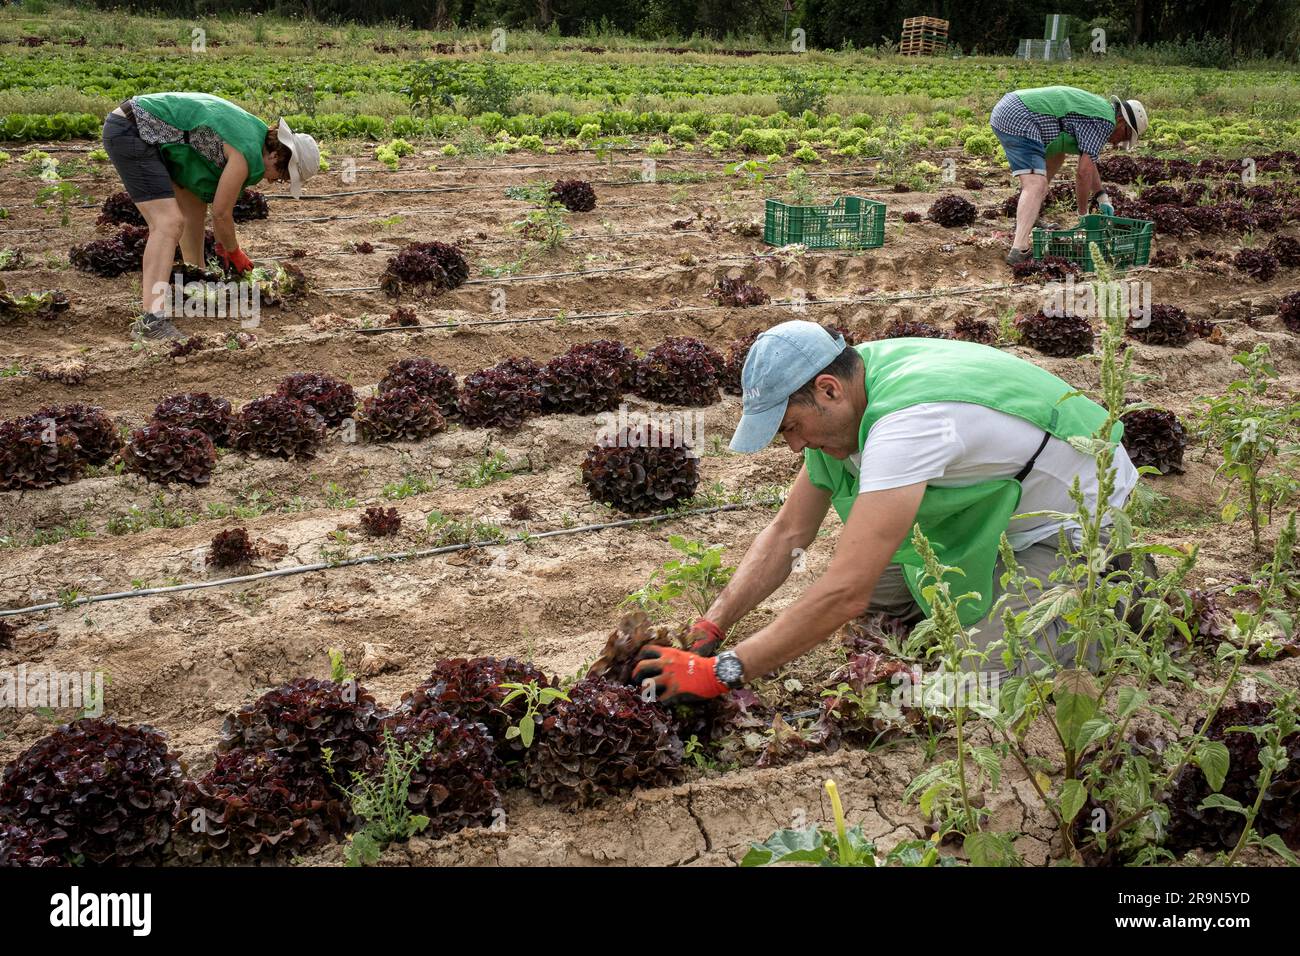 Freiwillige der NRO Espigoladors, die auf den Feldern in Sant Boi de Llobregat, spanien, Lebensmittel für Familien in prekären Situationen beschaffen Stockfoto